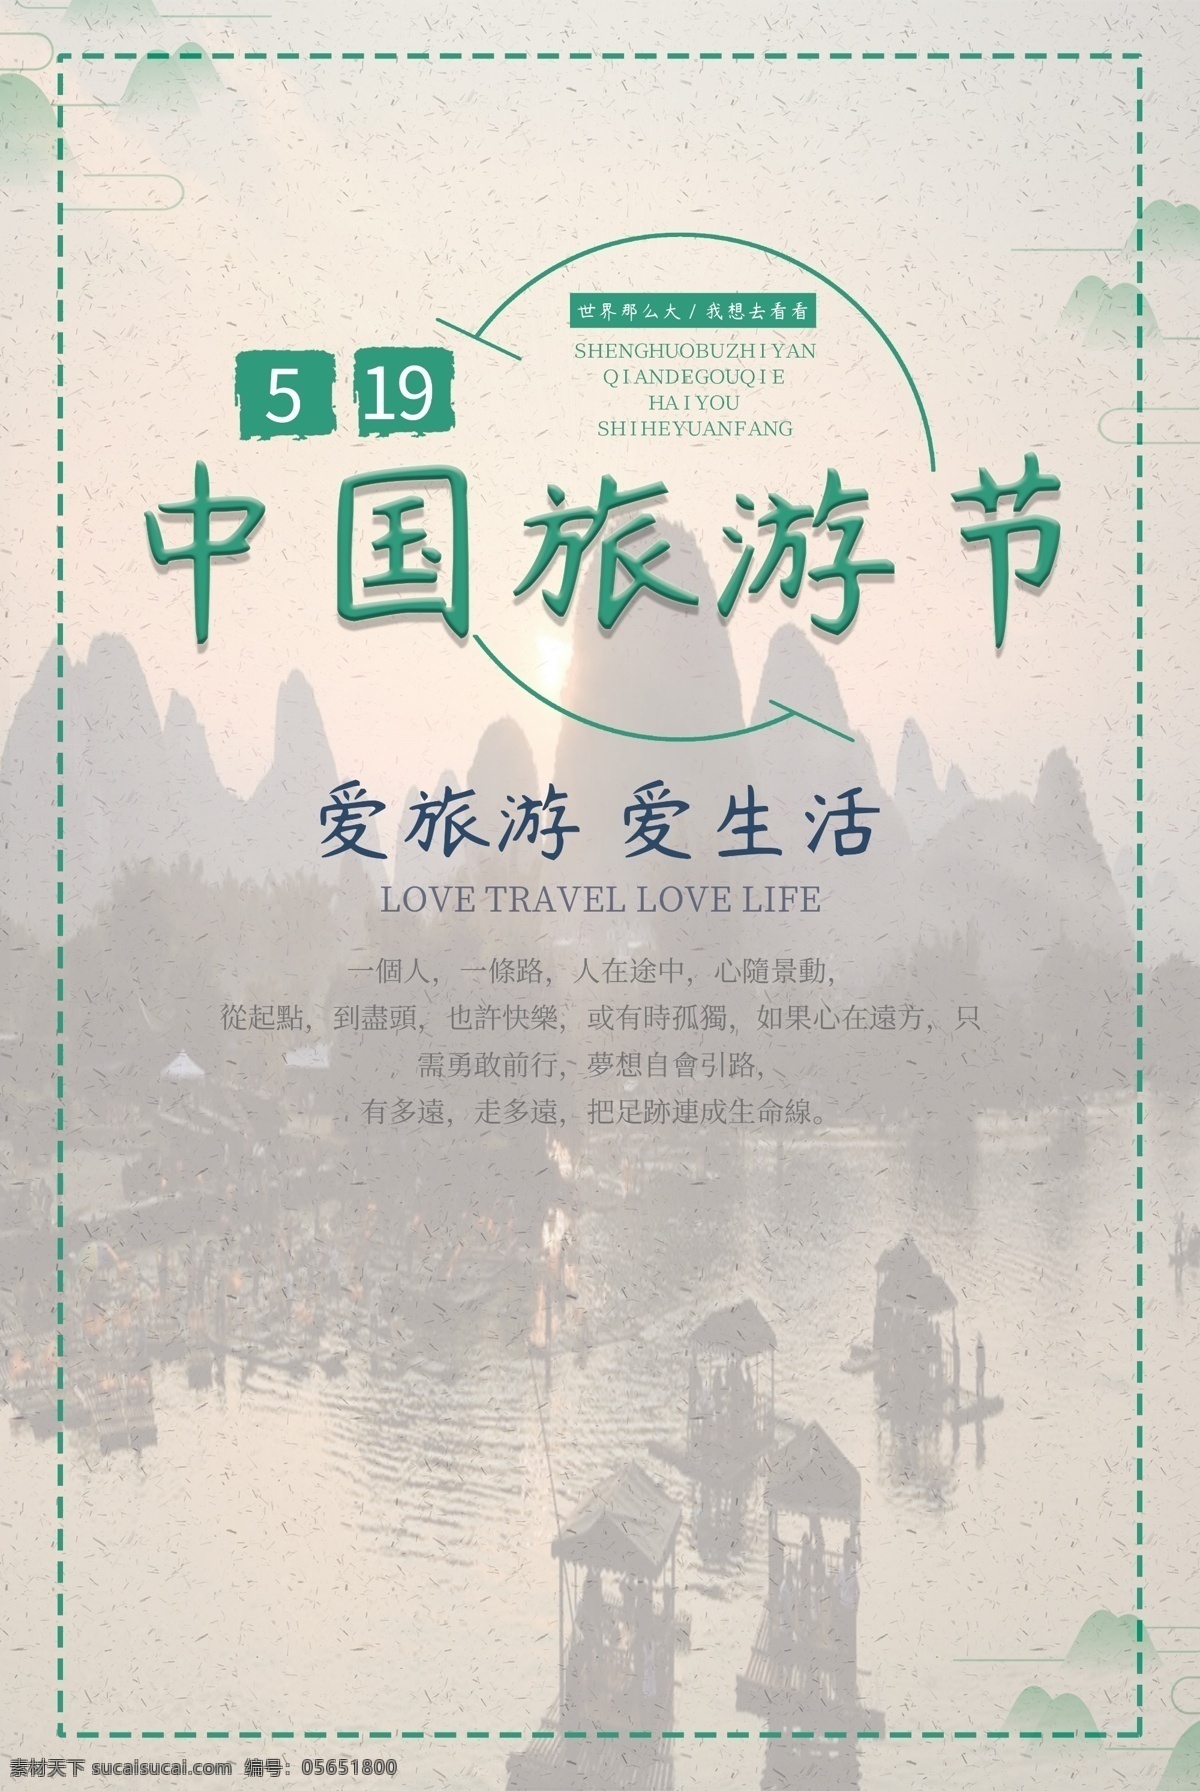 中国旅游 日 活动 海报 旅游 中国旅游热 节日 风景 广告 宣传